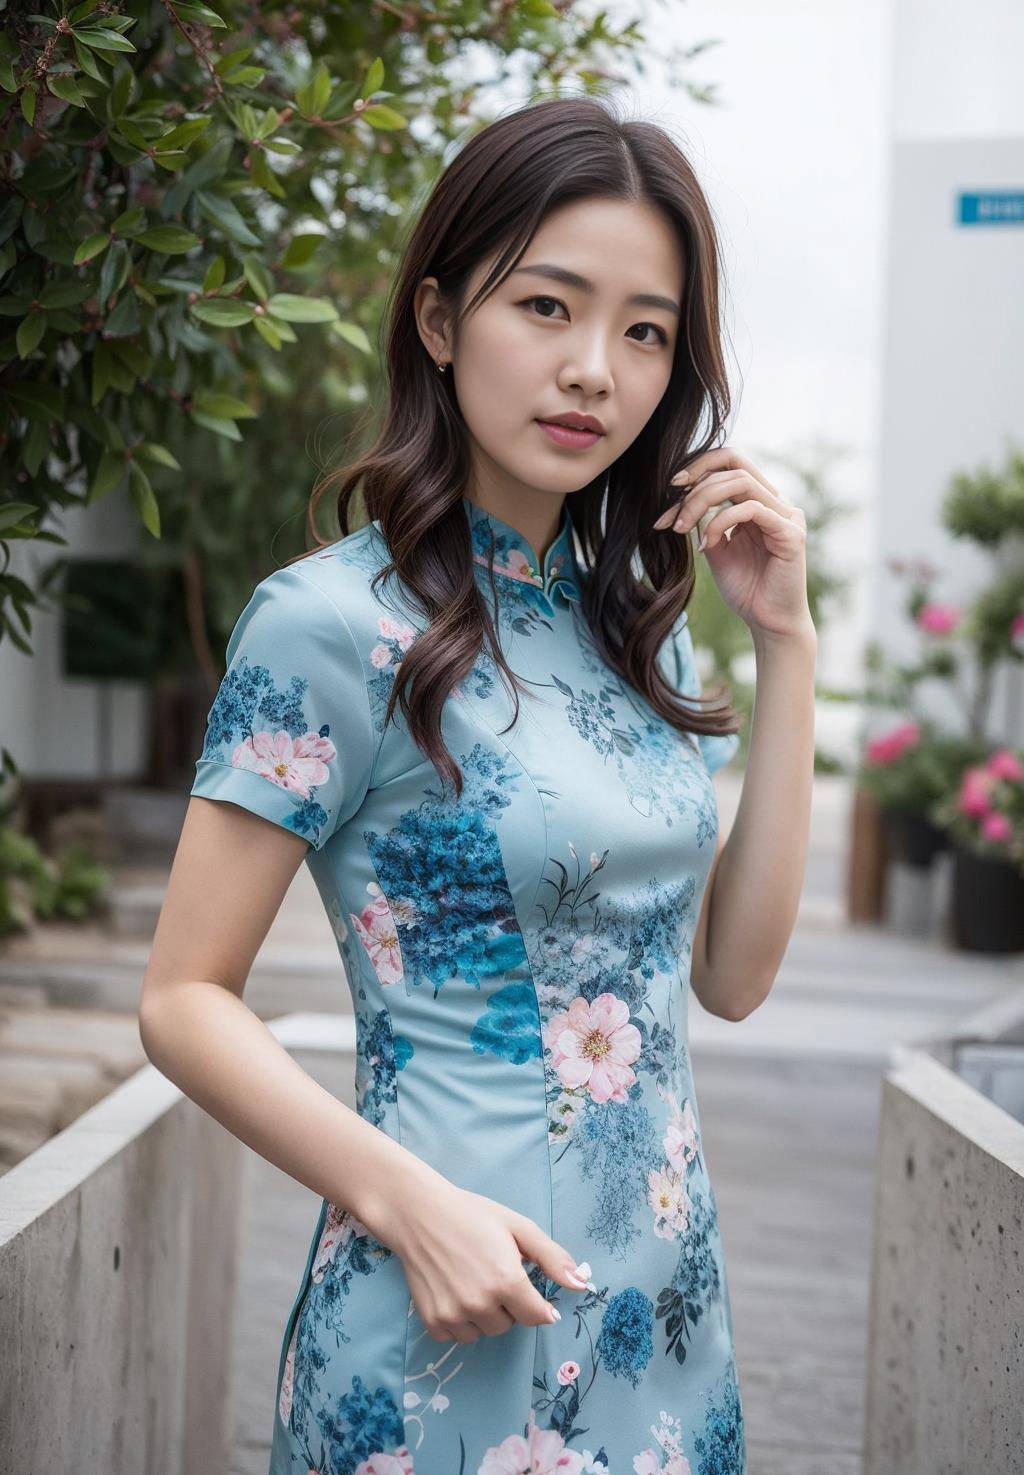 图集旗袍美女中国风美颜滤镜赏析:给你一种别样的精致之美